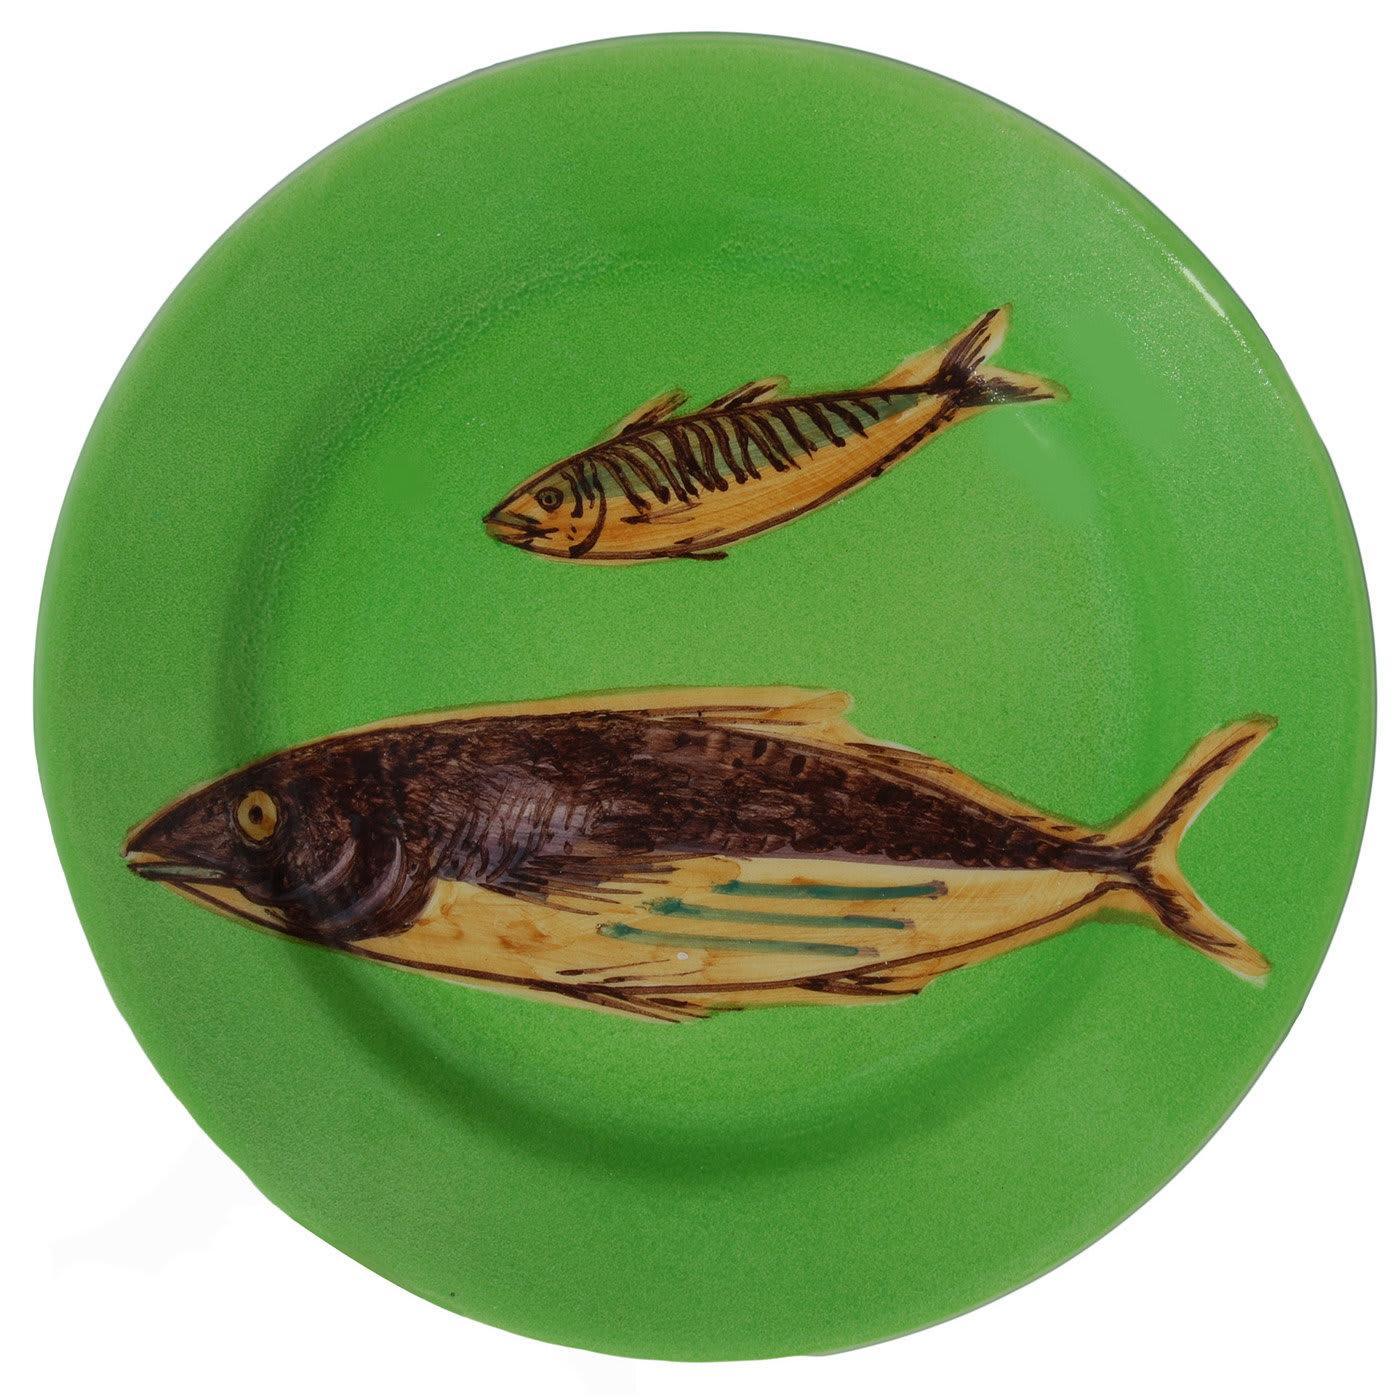 Set of 6 Green Fish Dessert Plates - Este Ceramiche